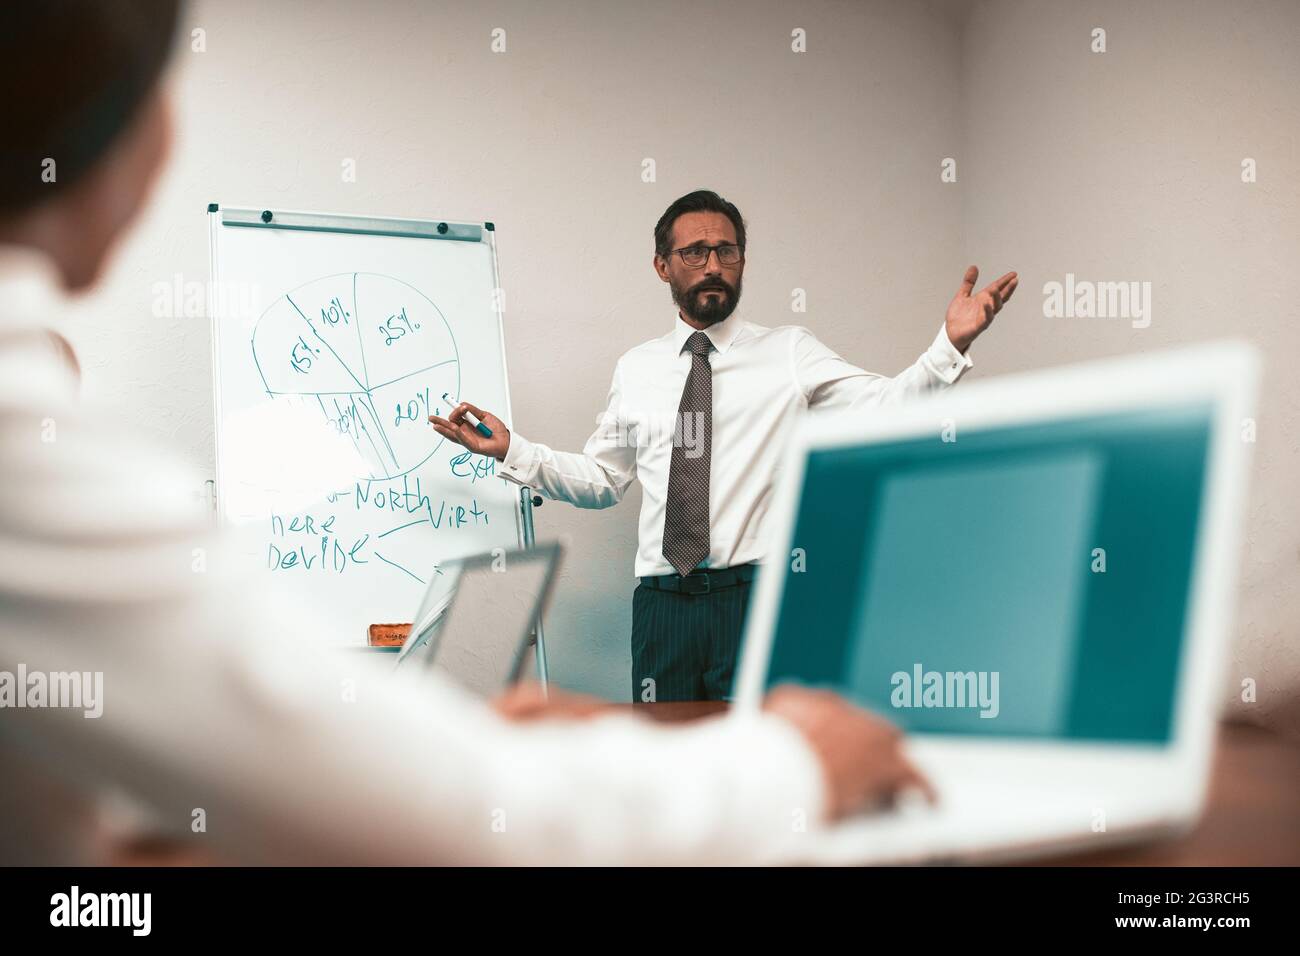 Le chef présente un plan d'affaires à ses collègues. Homme dans une chemise blanche avec une cravate se tient sur le tableau avec un schéma. BT bureau Banque D'Images